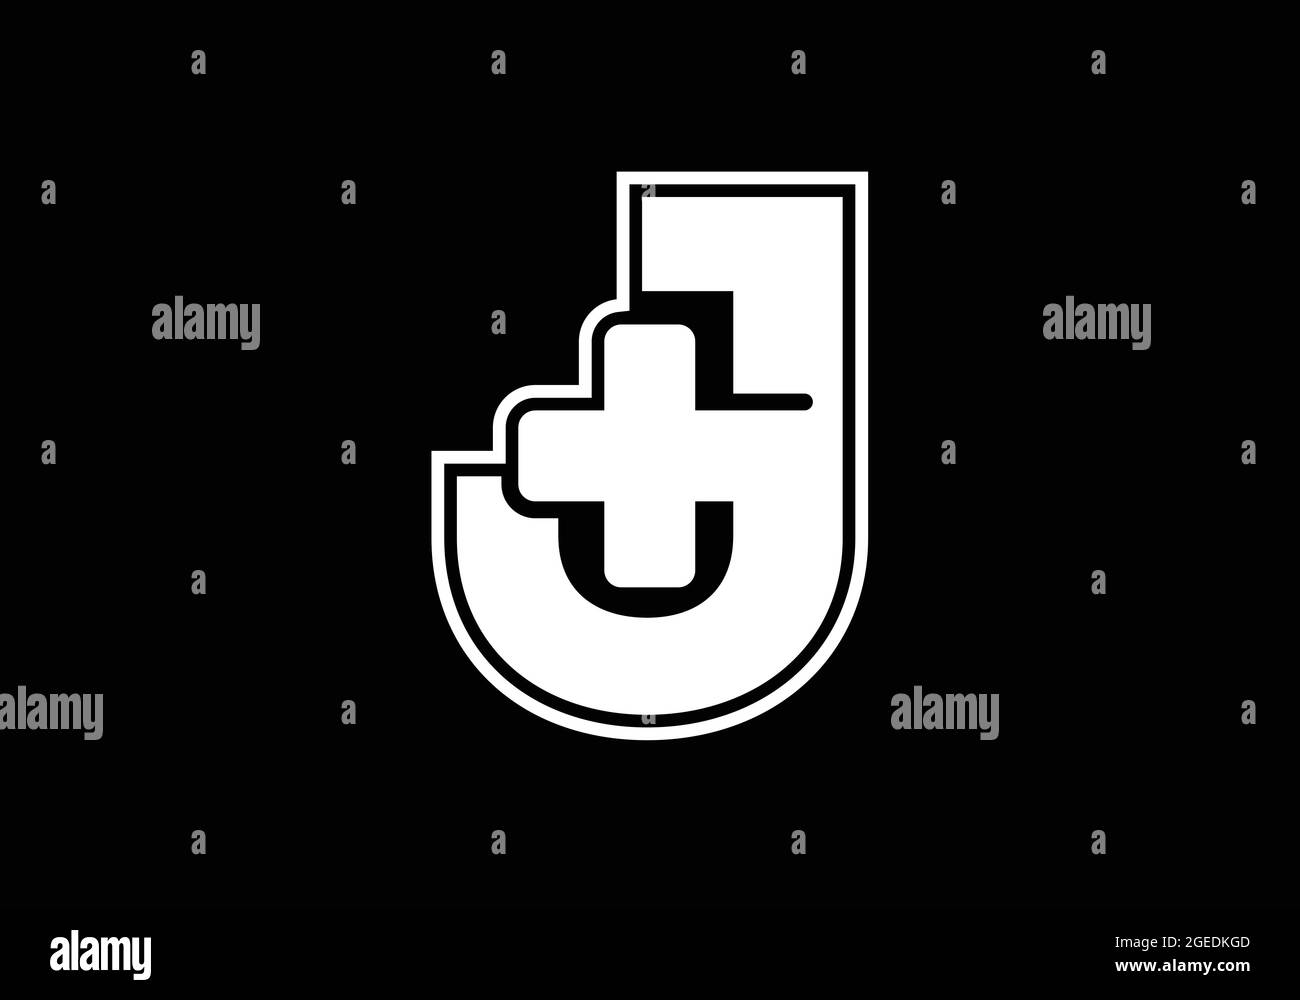 Anfängliches J-Monogramm-Alphabet mit einem Plus-Logo-Zeichen weiß auf schwarzem Hintergrund. Schrift-Emblem. Modernes Vektorlogo für Medizin- oder Gesundheitsbranche Stock Vektor